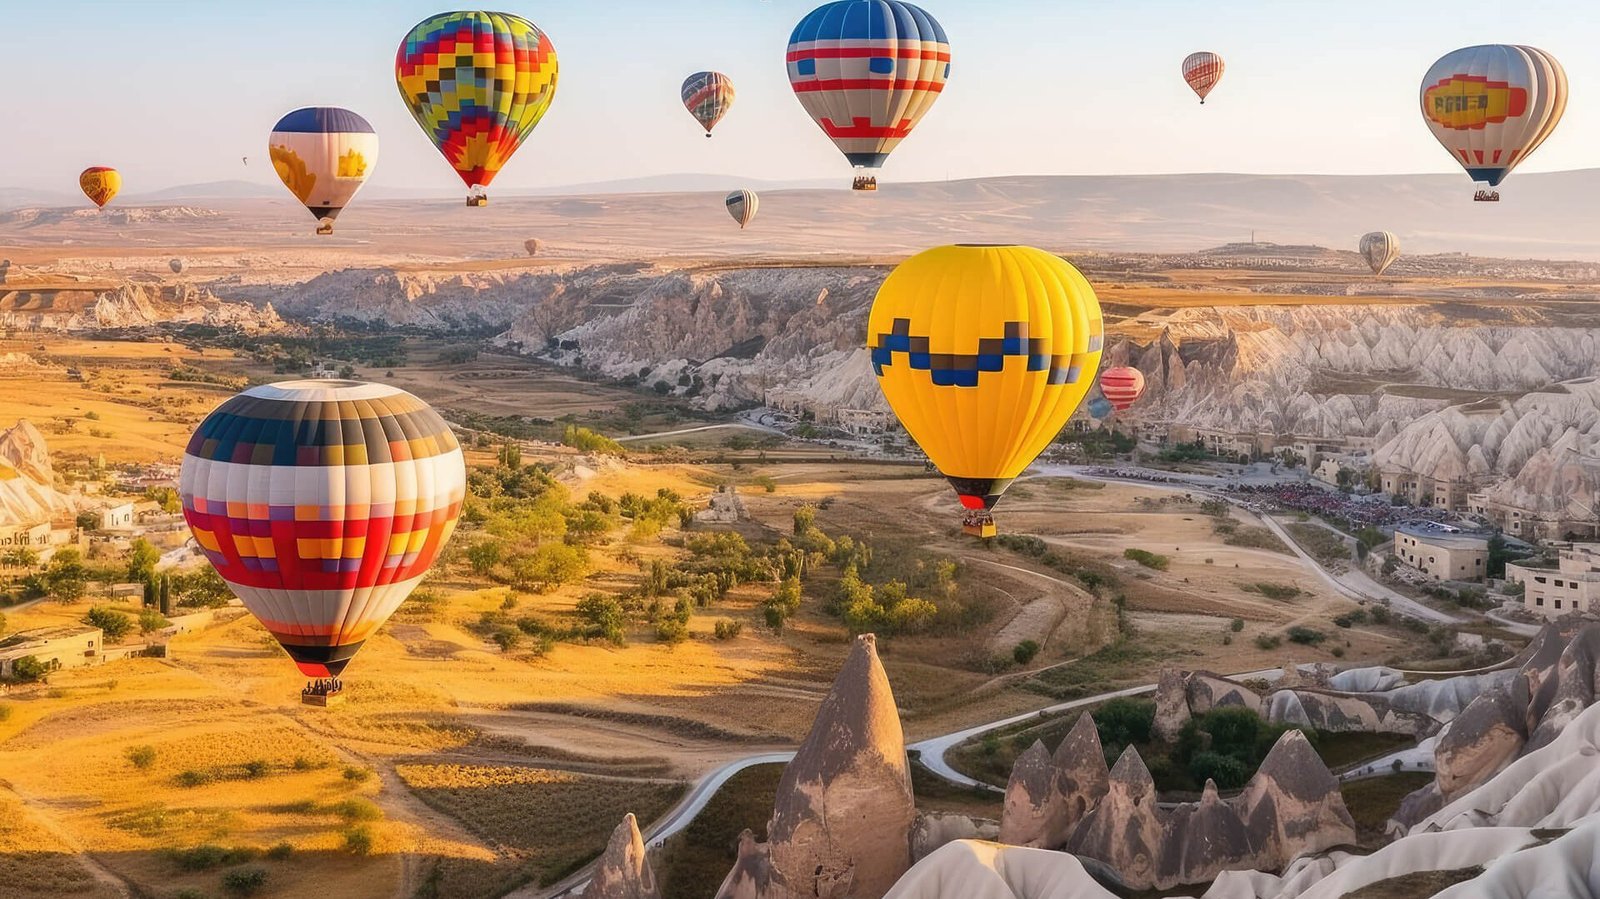 Cappadocia, Turkey: A destination for balloon rides amidst hot air balloons.